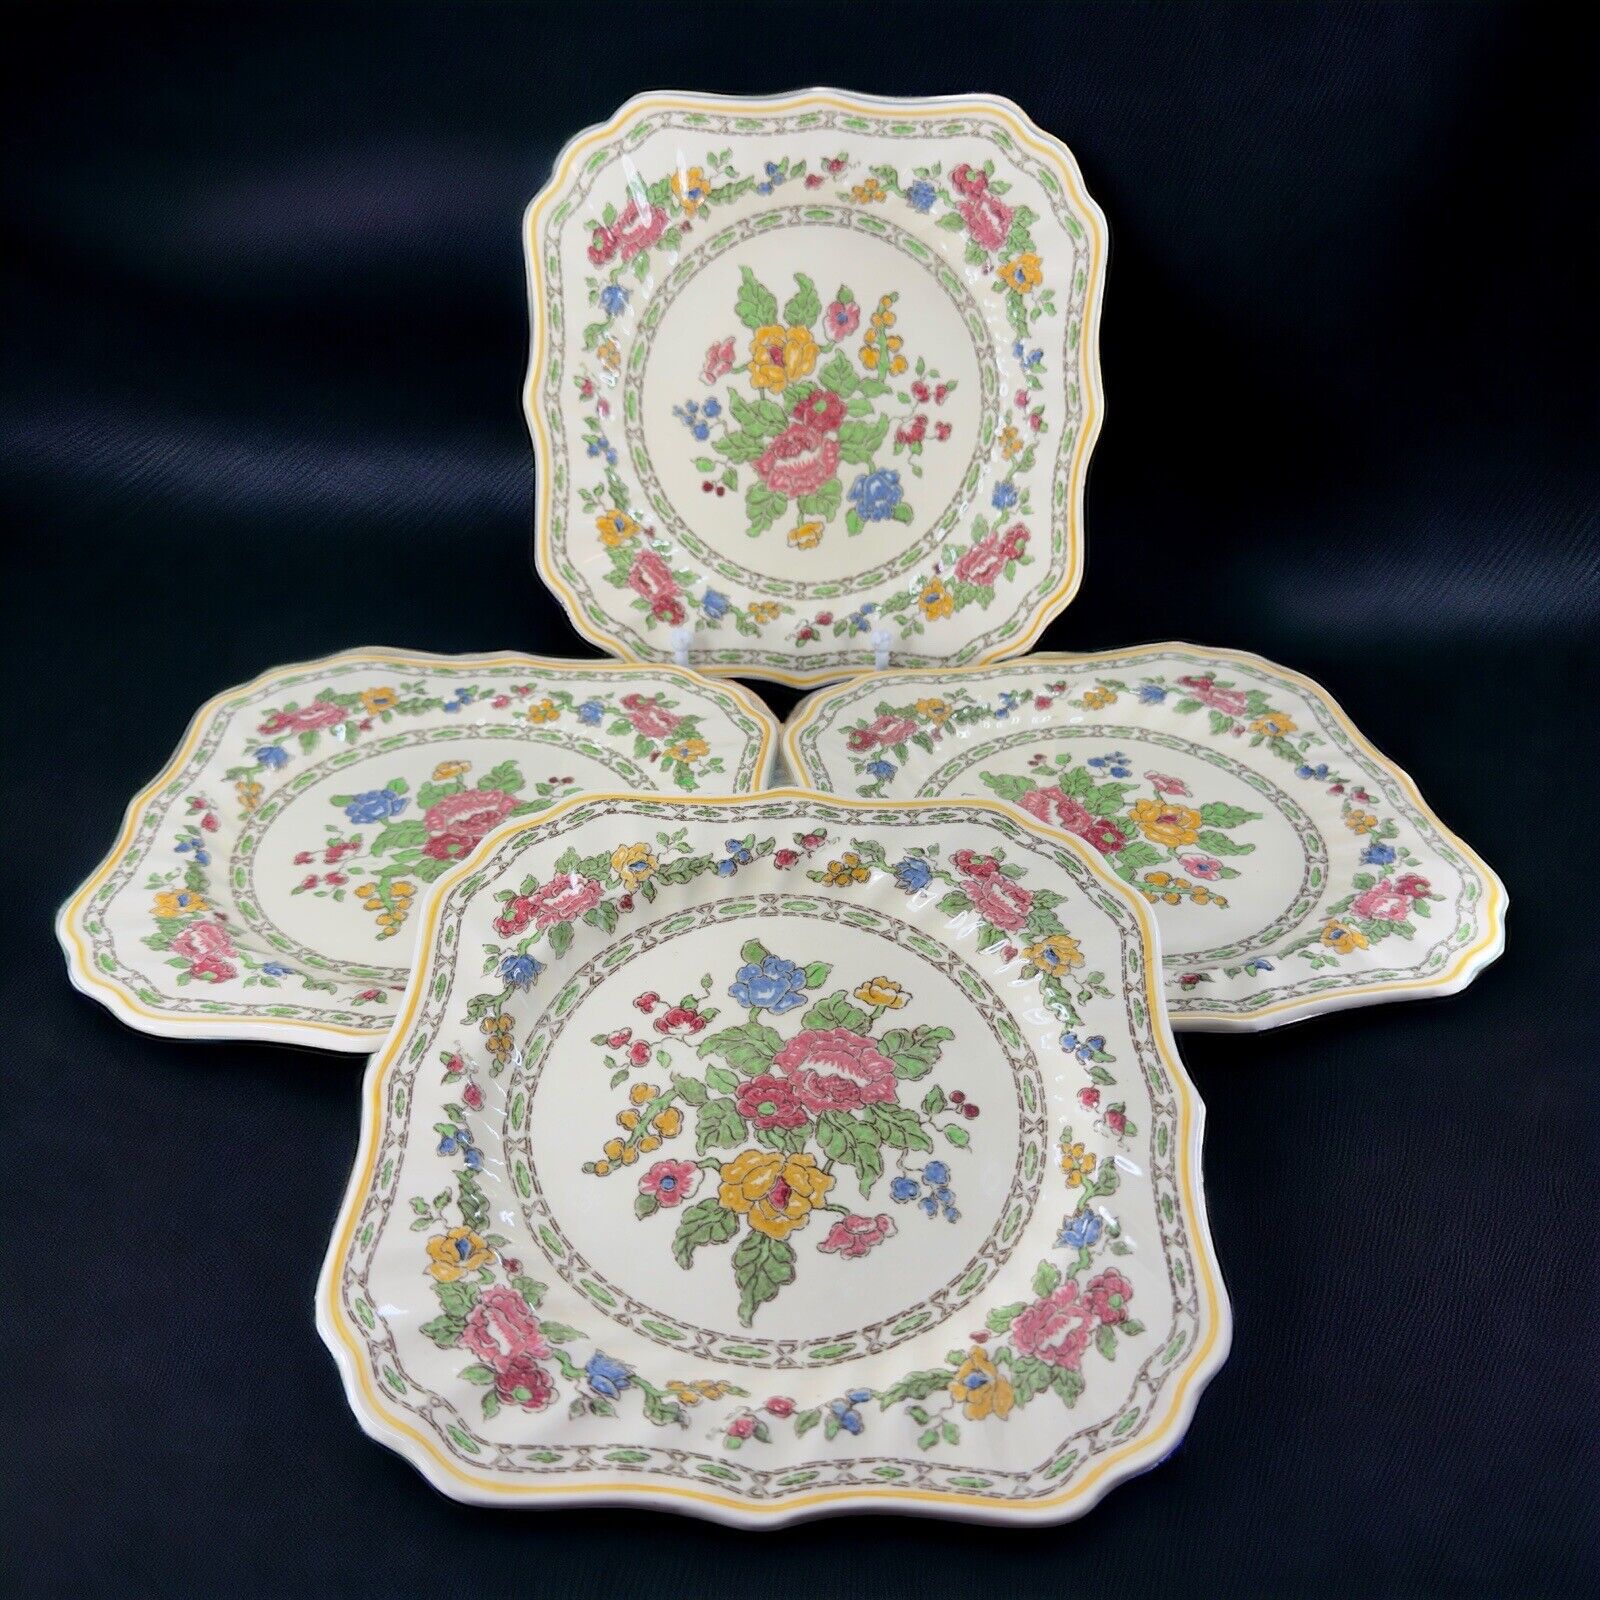 Antique Royal Doulton The Cavendish Porcelain Square Dish Plate Set 4 England